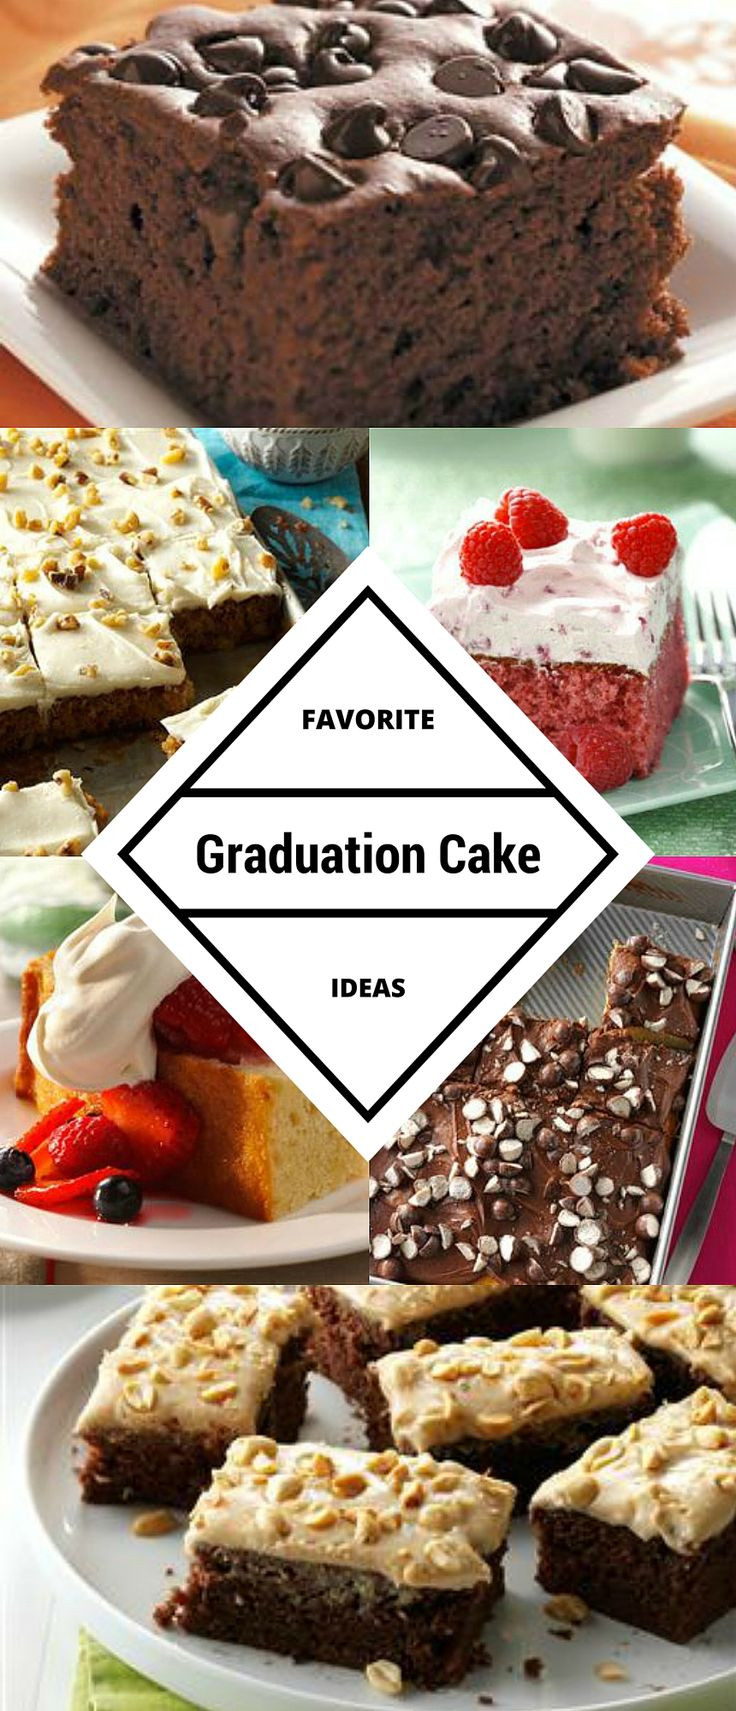 Graduation Party Appetizer Ideas
 59 best images about Graduation Party Recipes on Pinterest